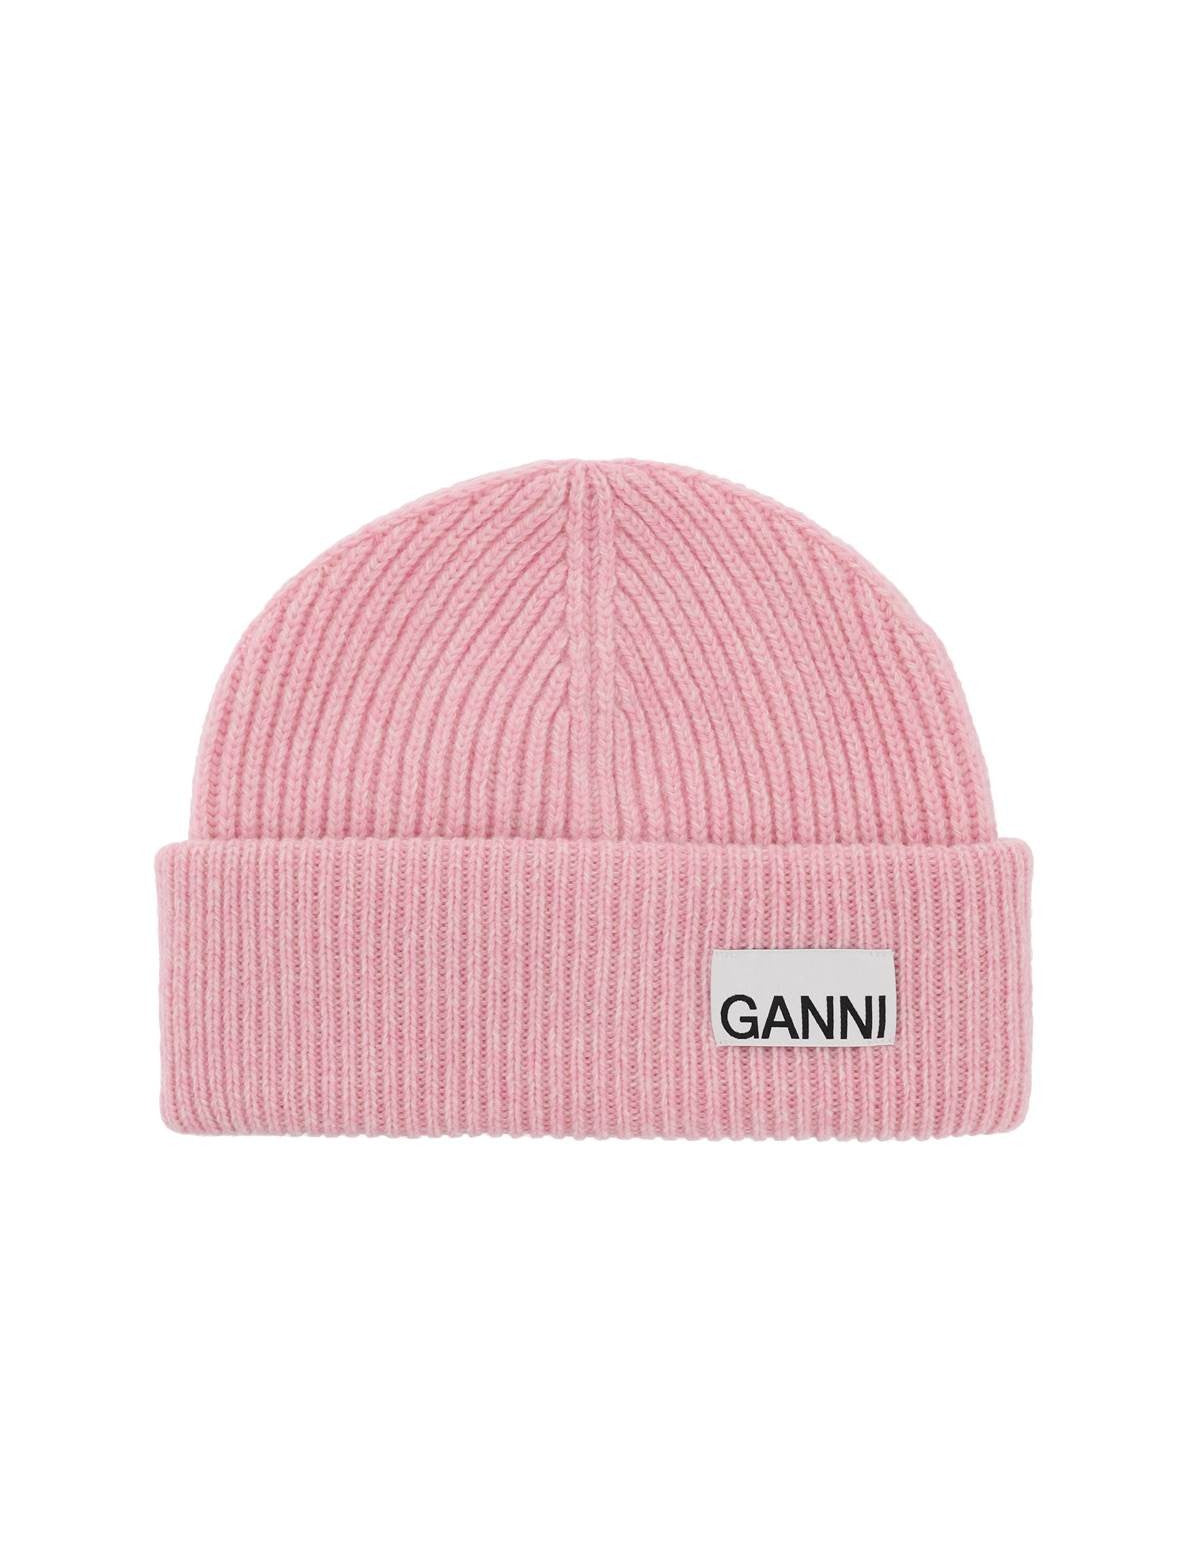 ganni-beanie-hat-with-logo-label.jpg